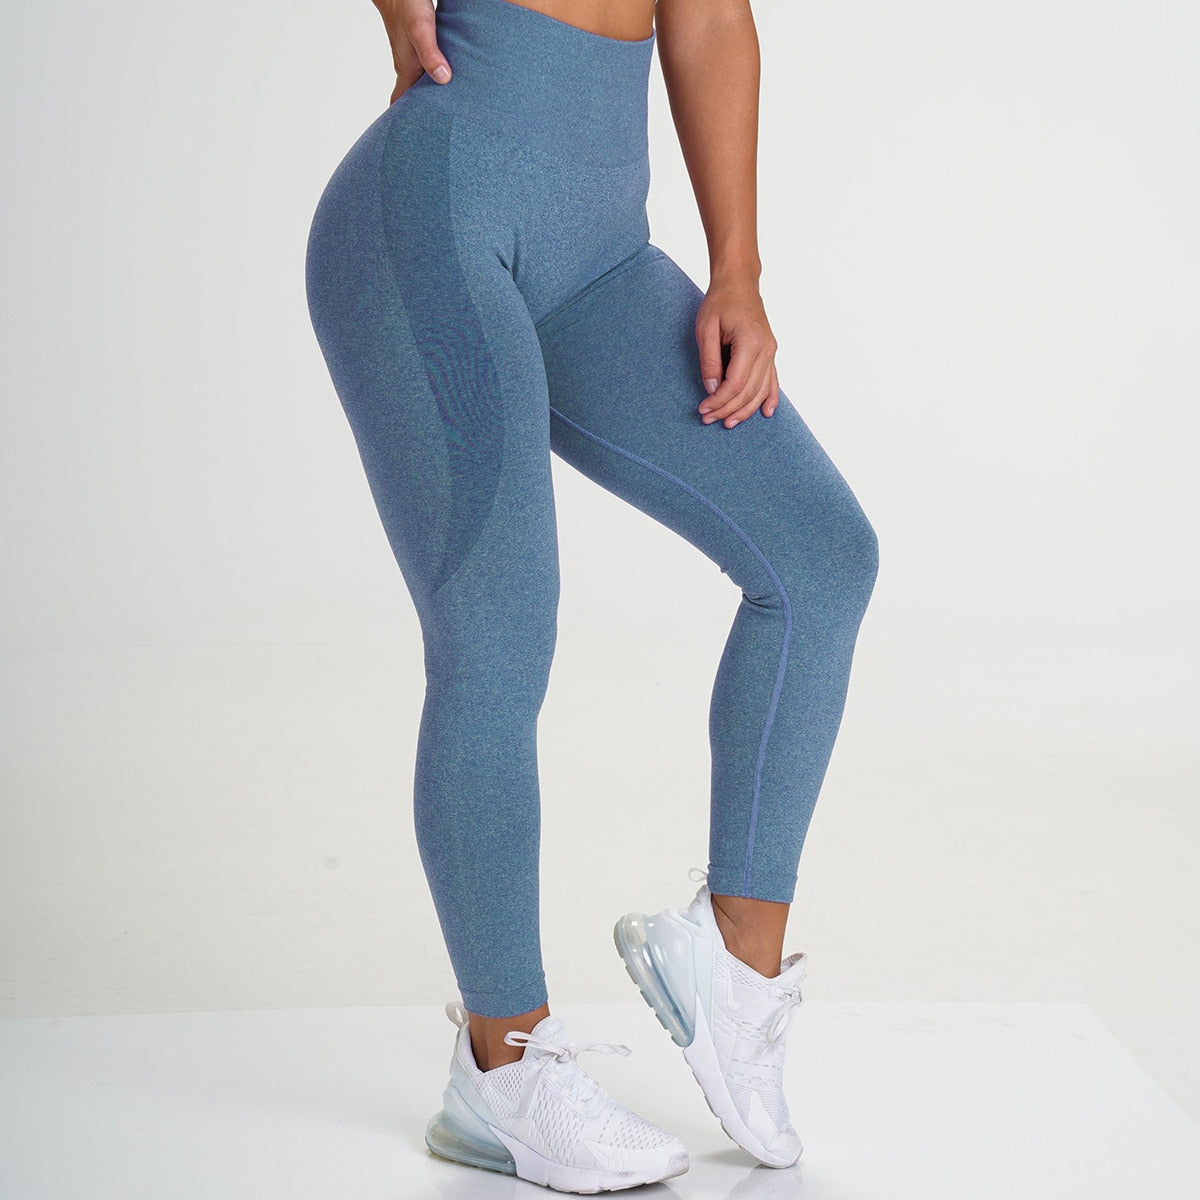 Workout Gym Legging Seamless Women Sport Pants